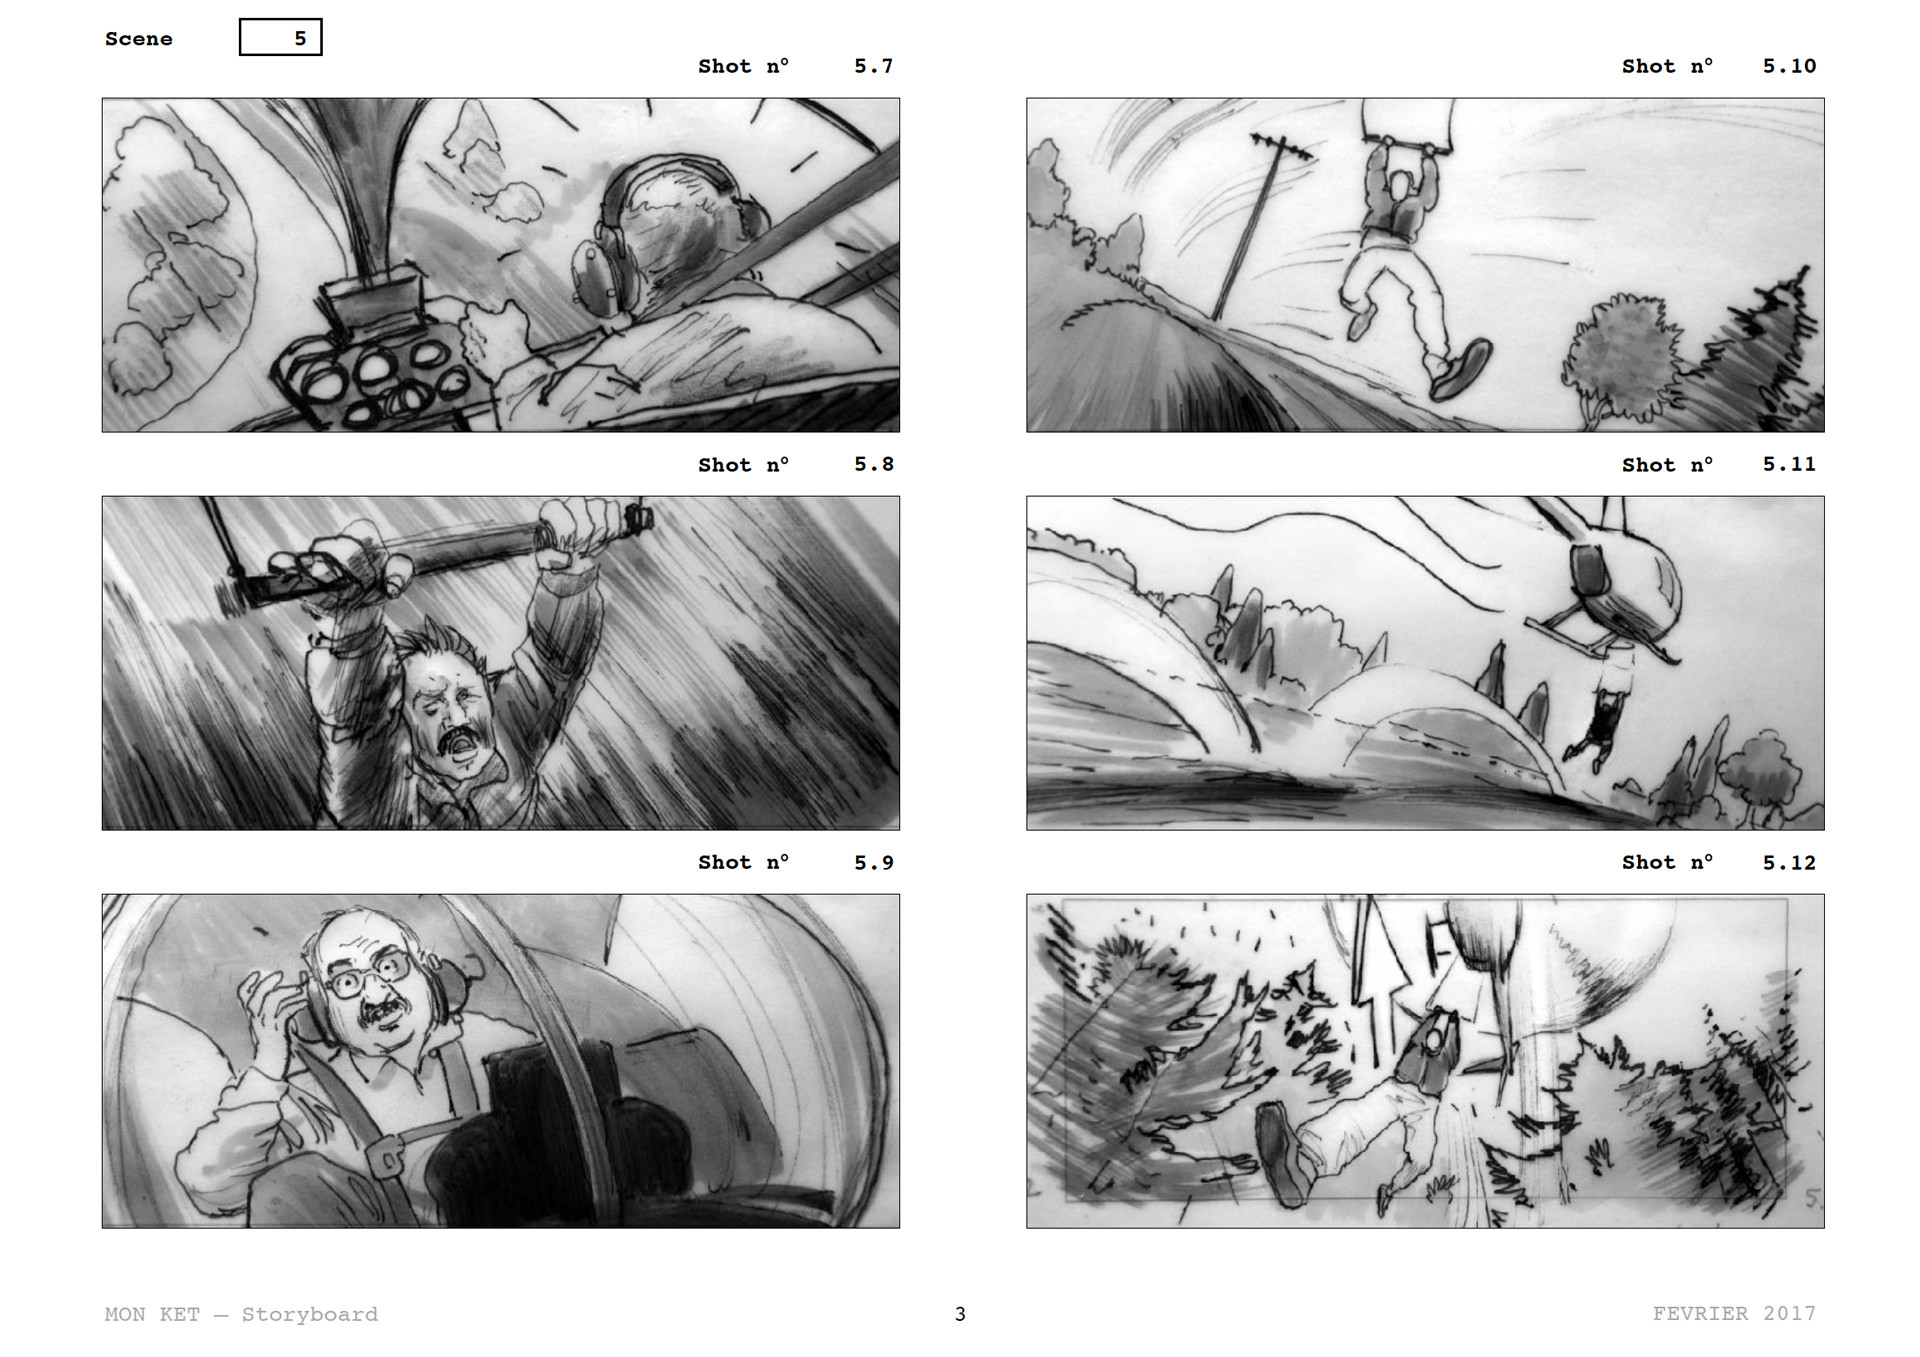 =Mon Ket — Storyboard, scènes d'évasion, page 2